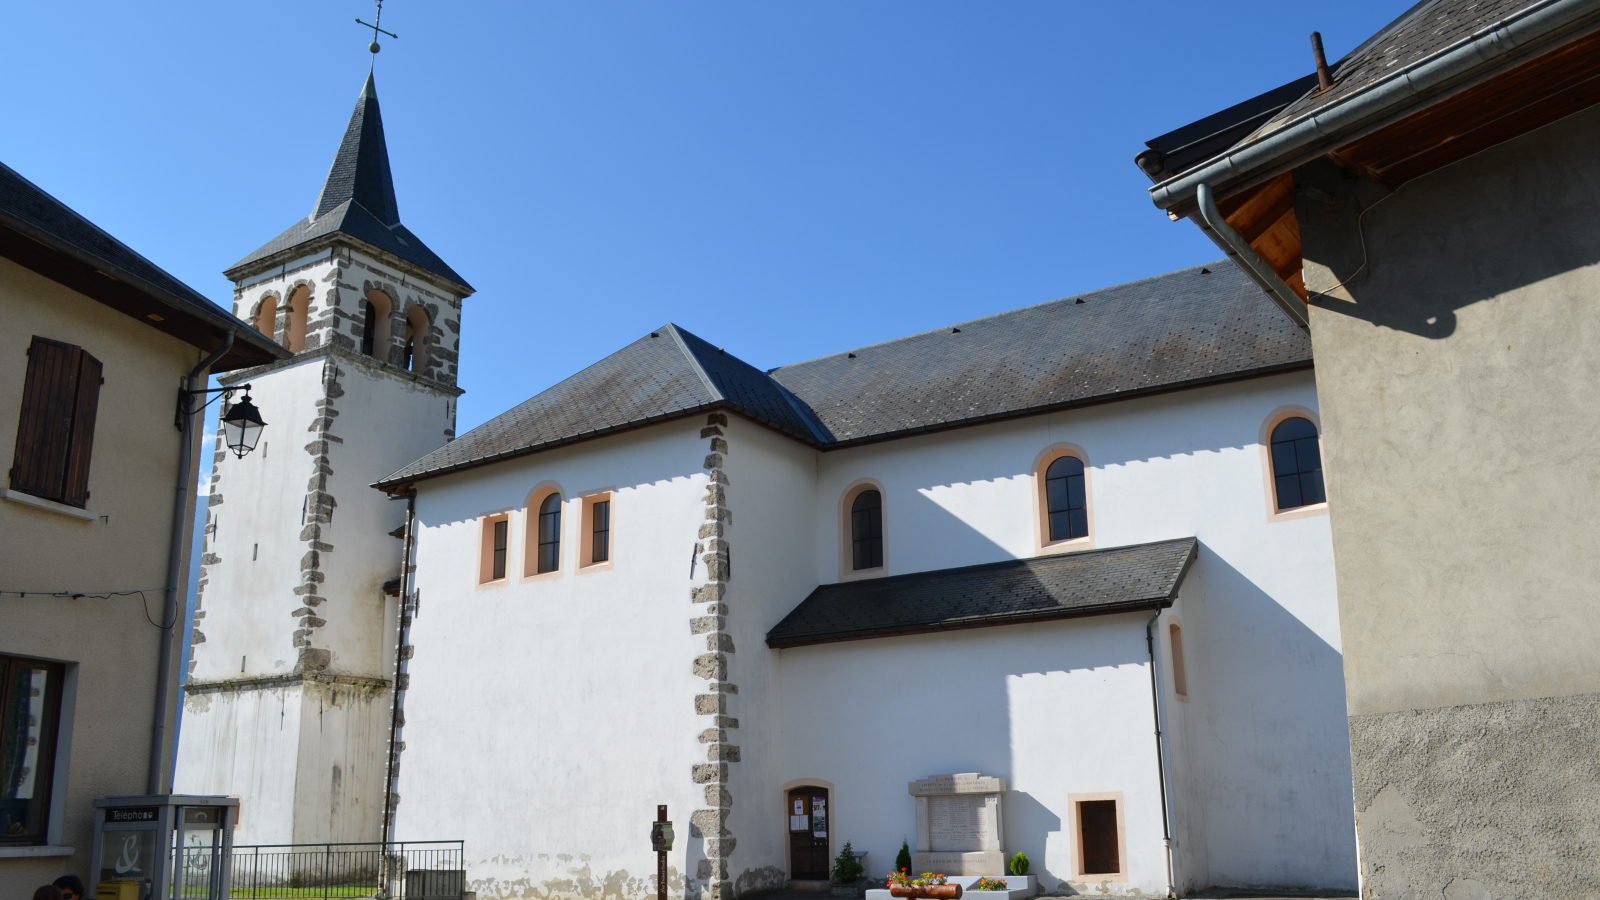 Eglise Saint-Alban-d'Hurtières